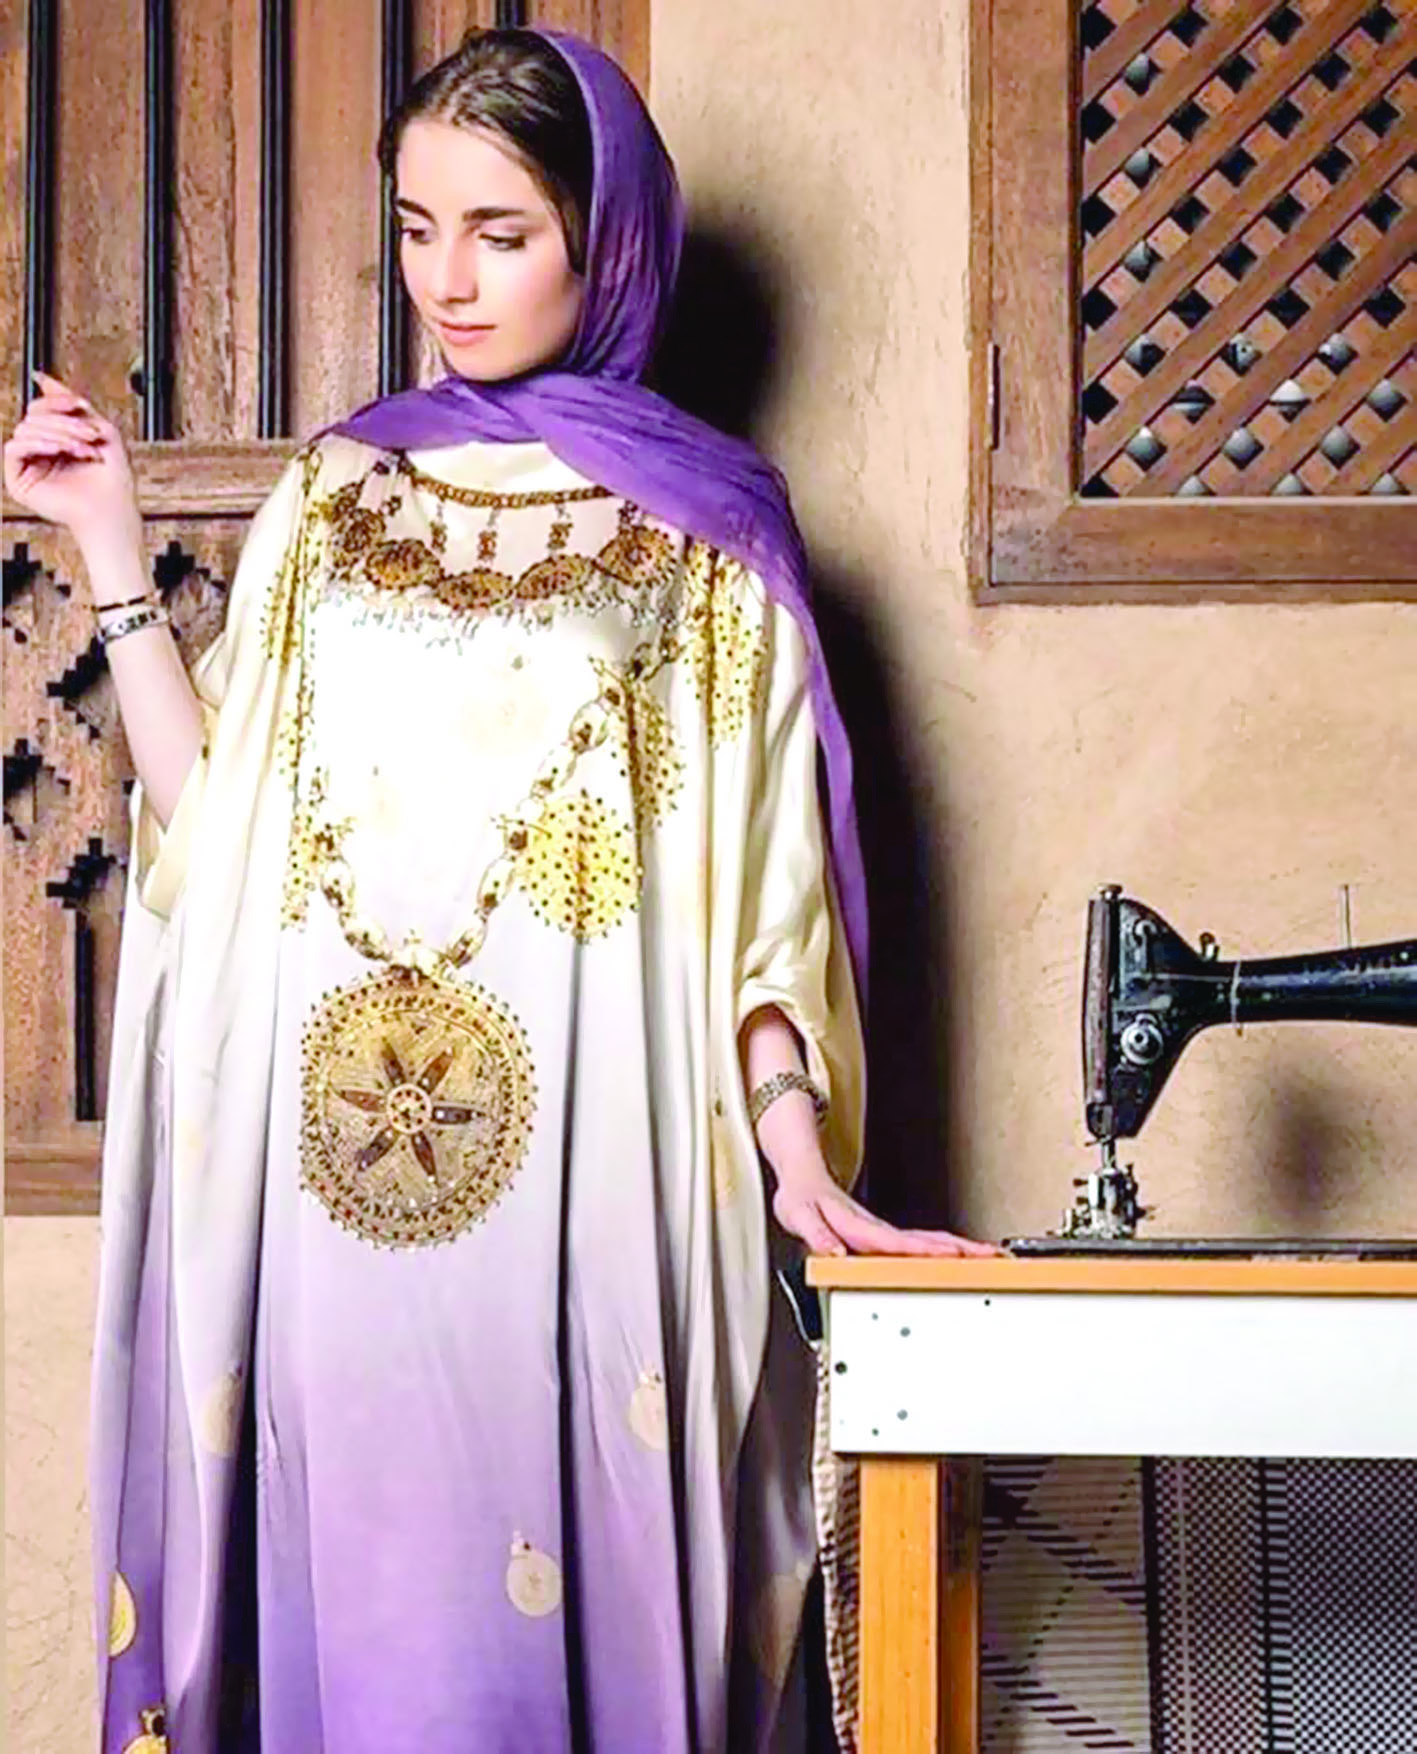 المصممة خديجة الخنجية:
مجموعتي "ذهبان المزيونة" مستوحاة من واقع مشغولات ذهبية عمانية حقيقية